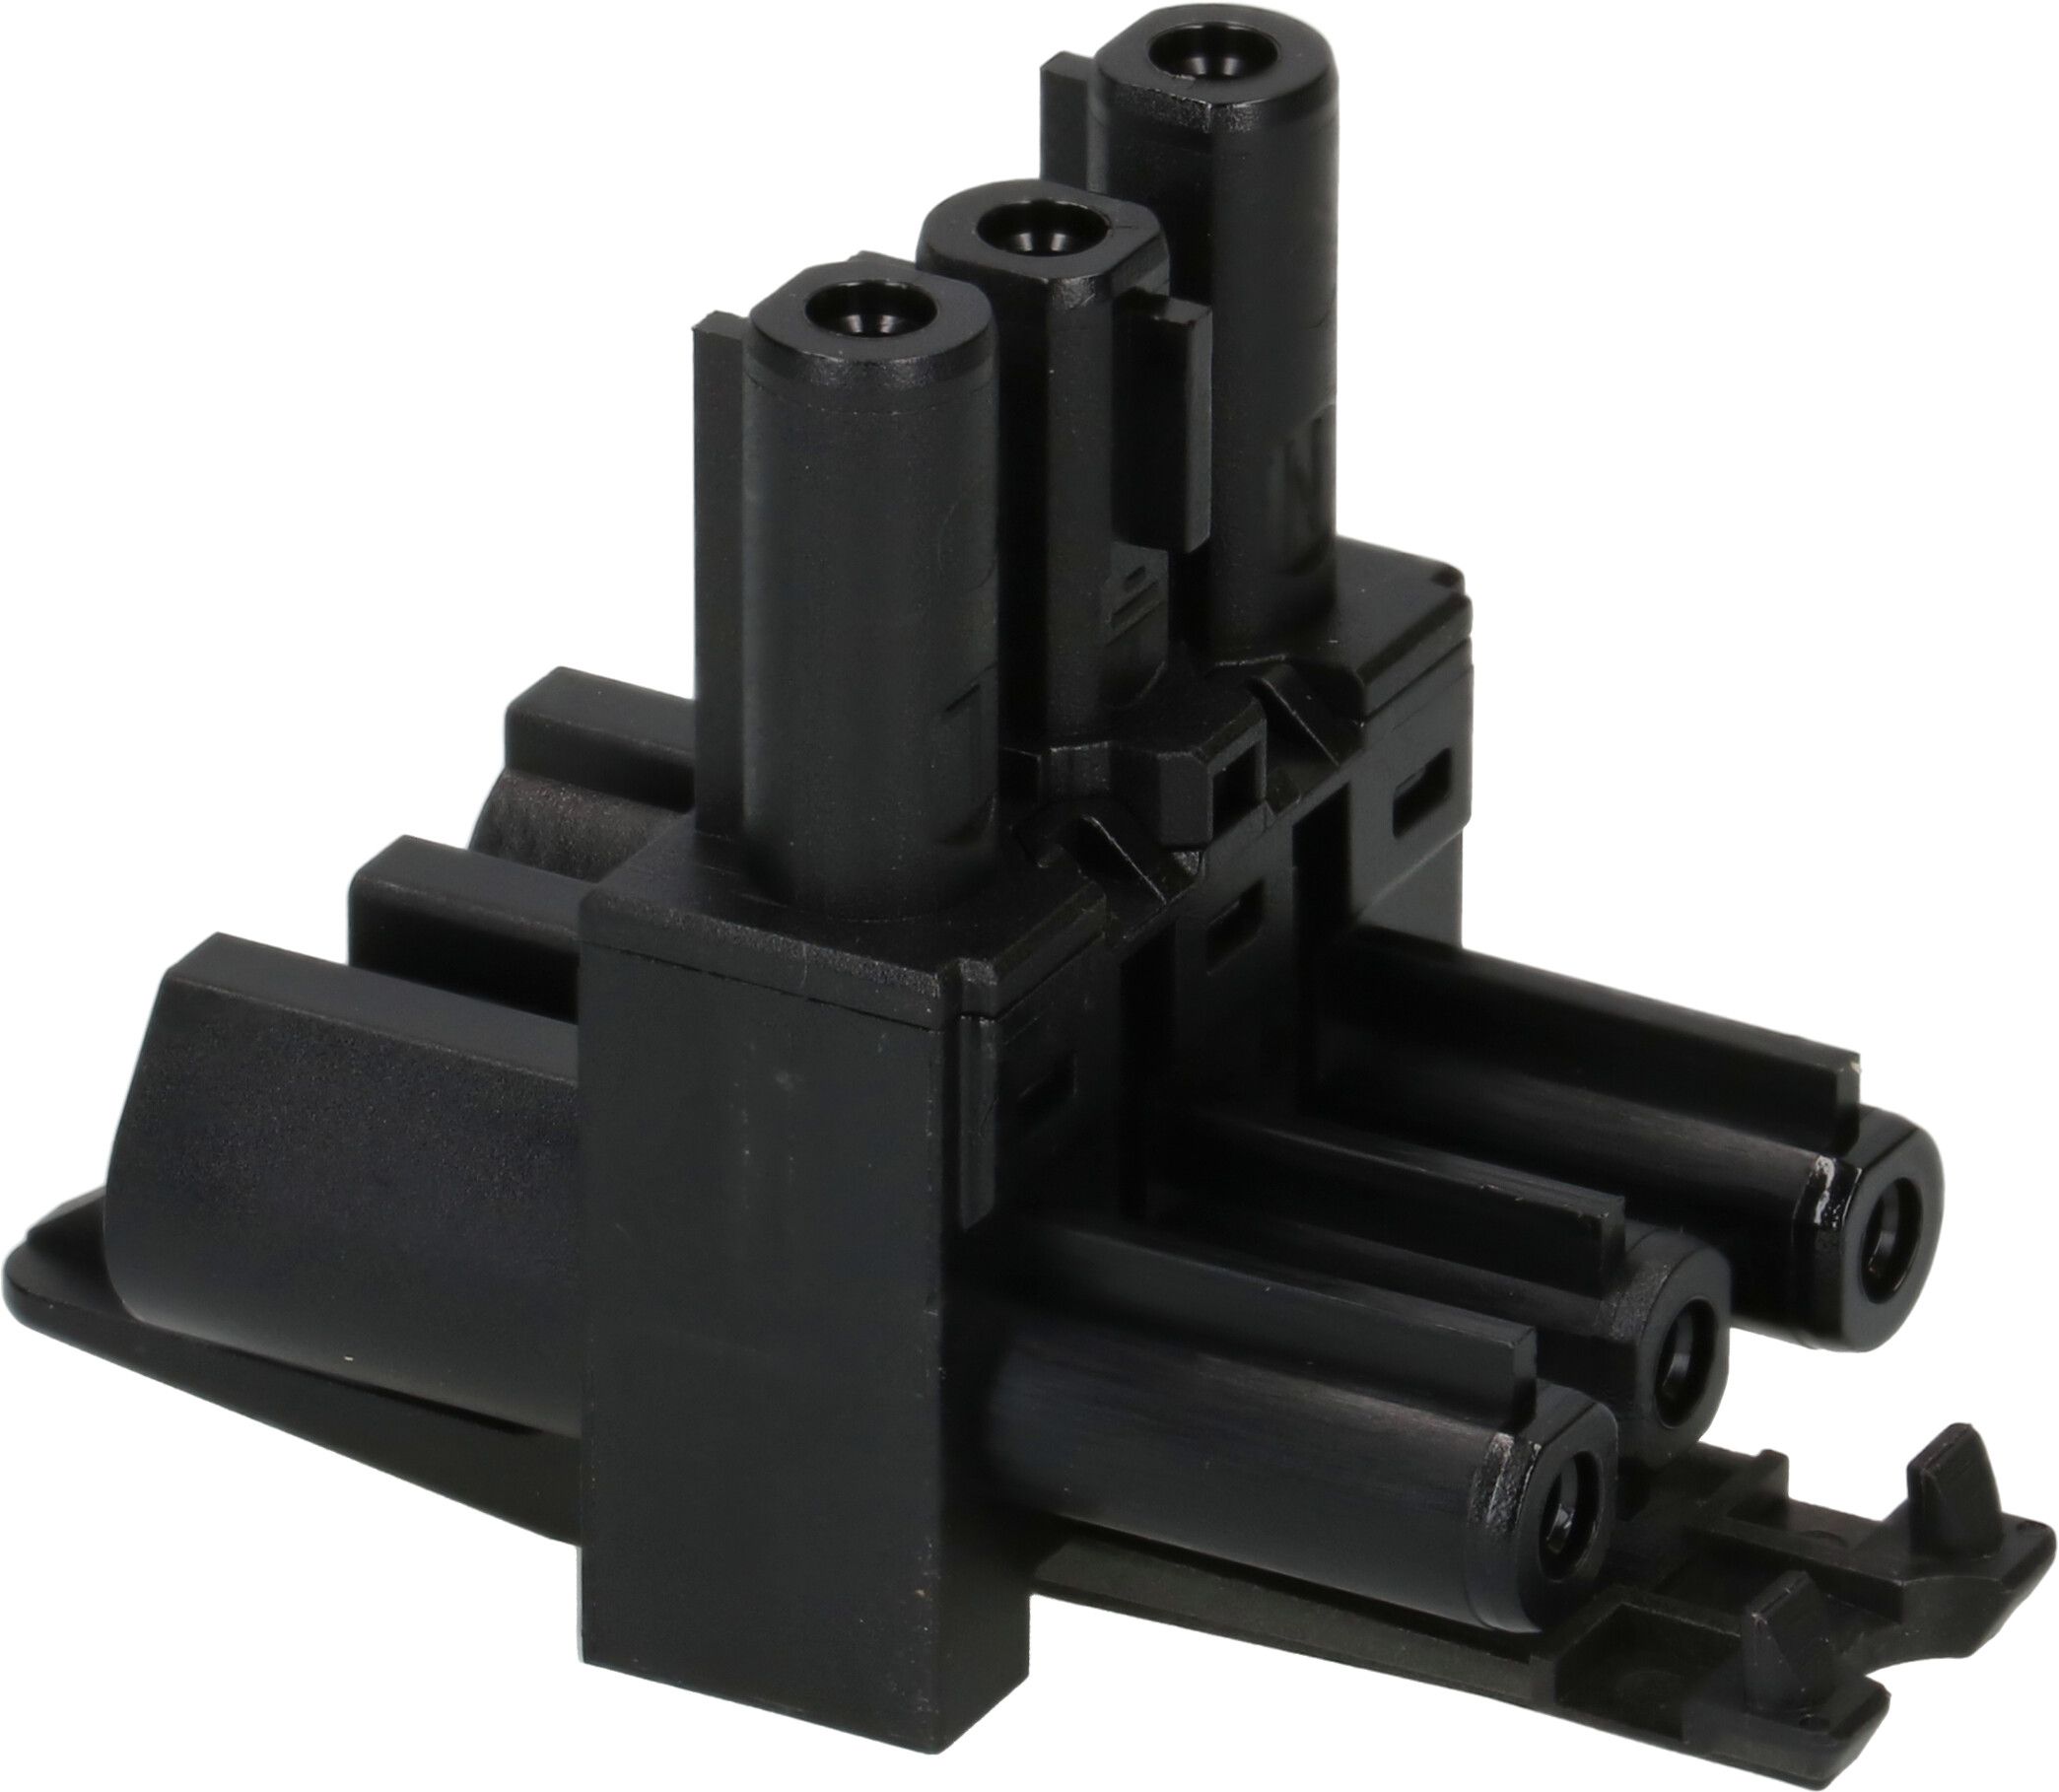 Verteilerblock AC 166 GVT 3/3 schwarz, anreihbar